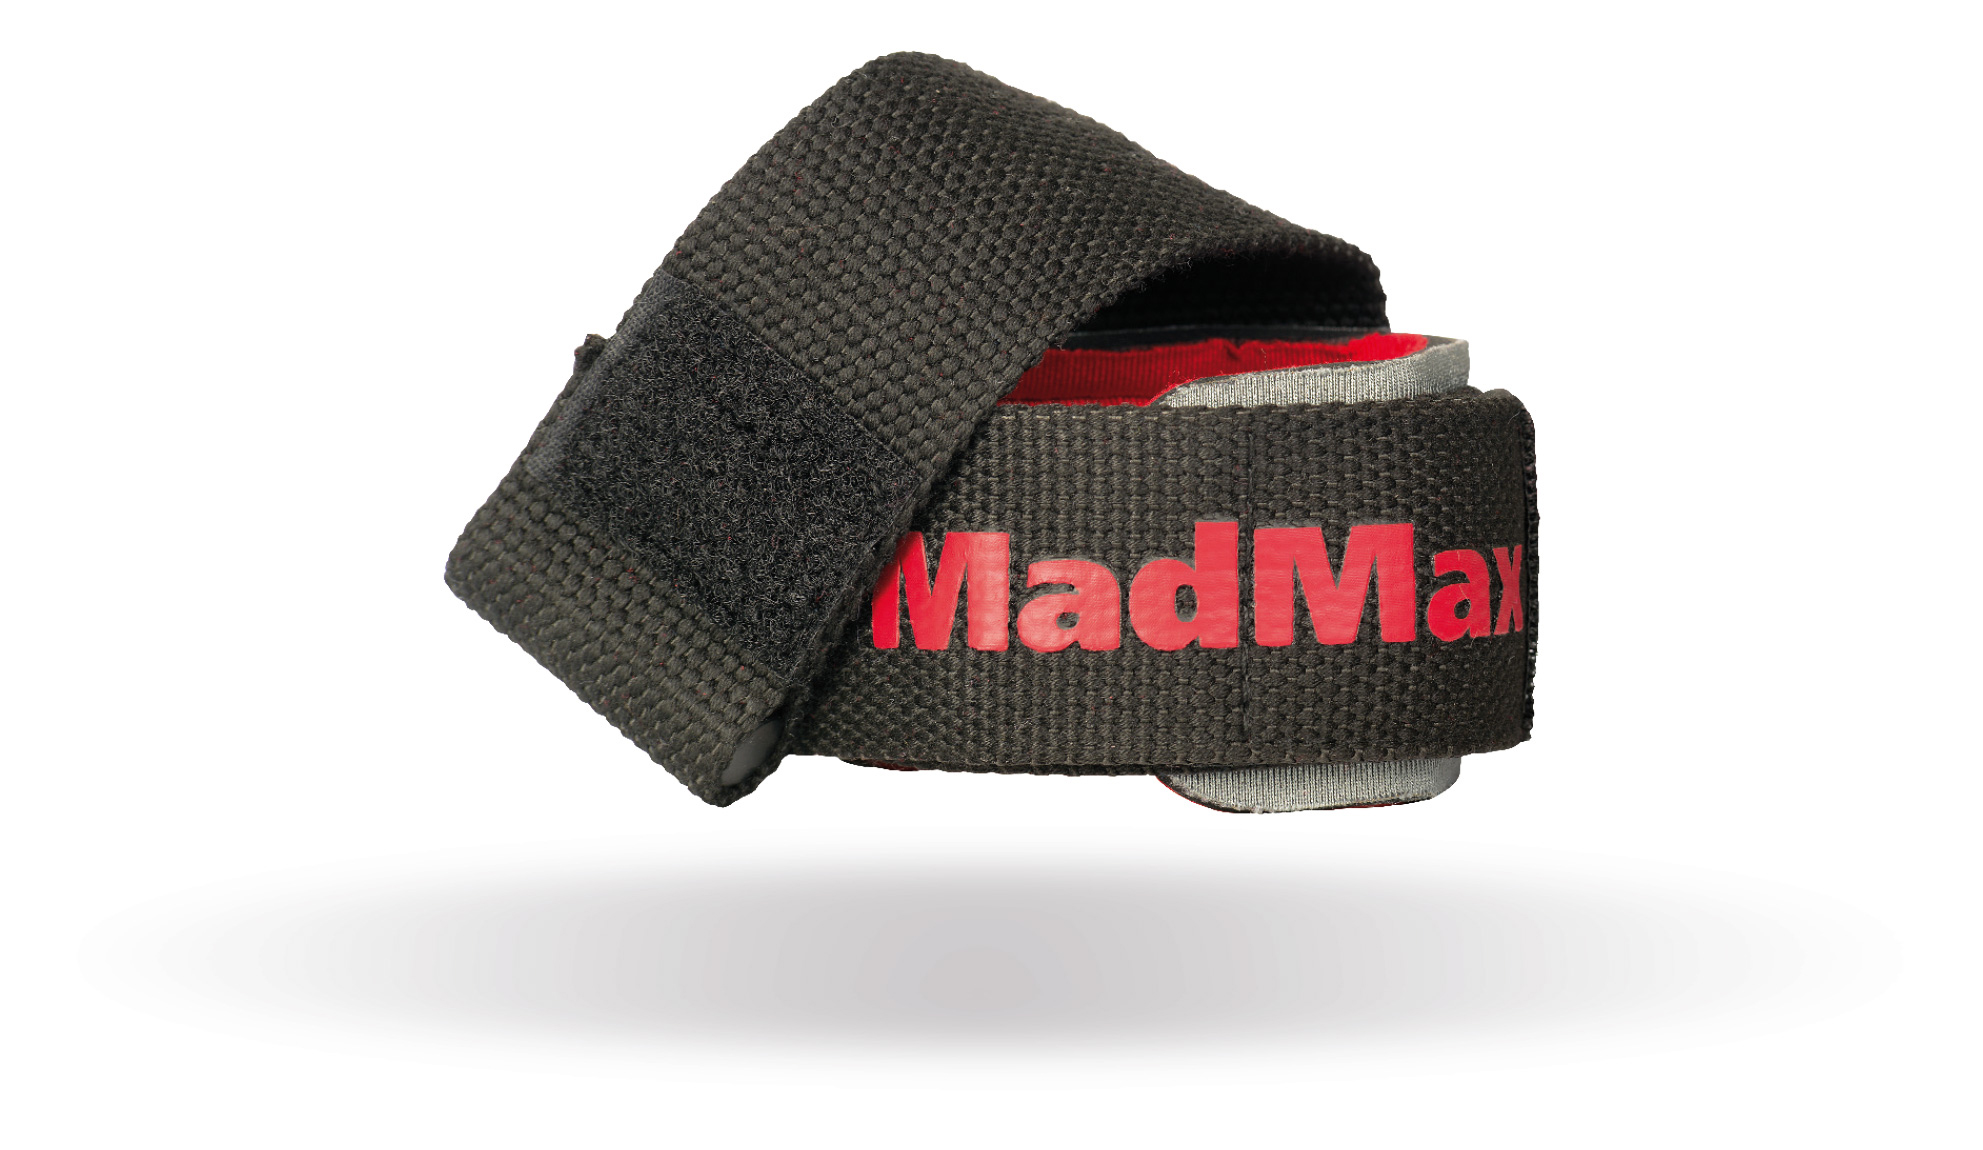 MAD MAX MFA-332 pwr straps +